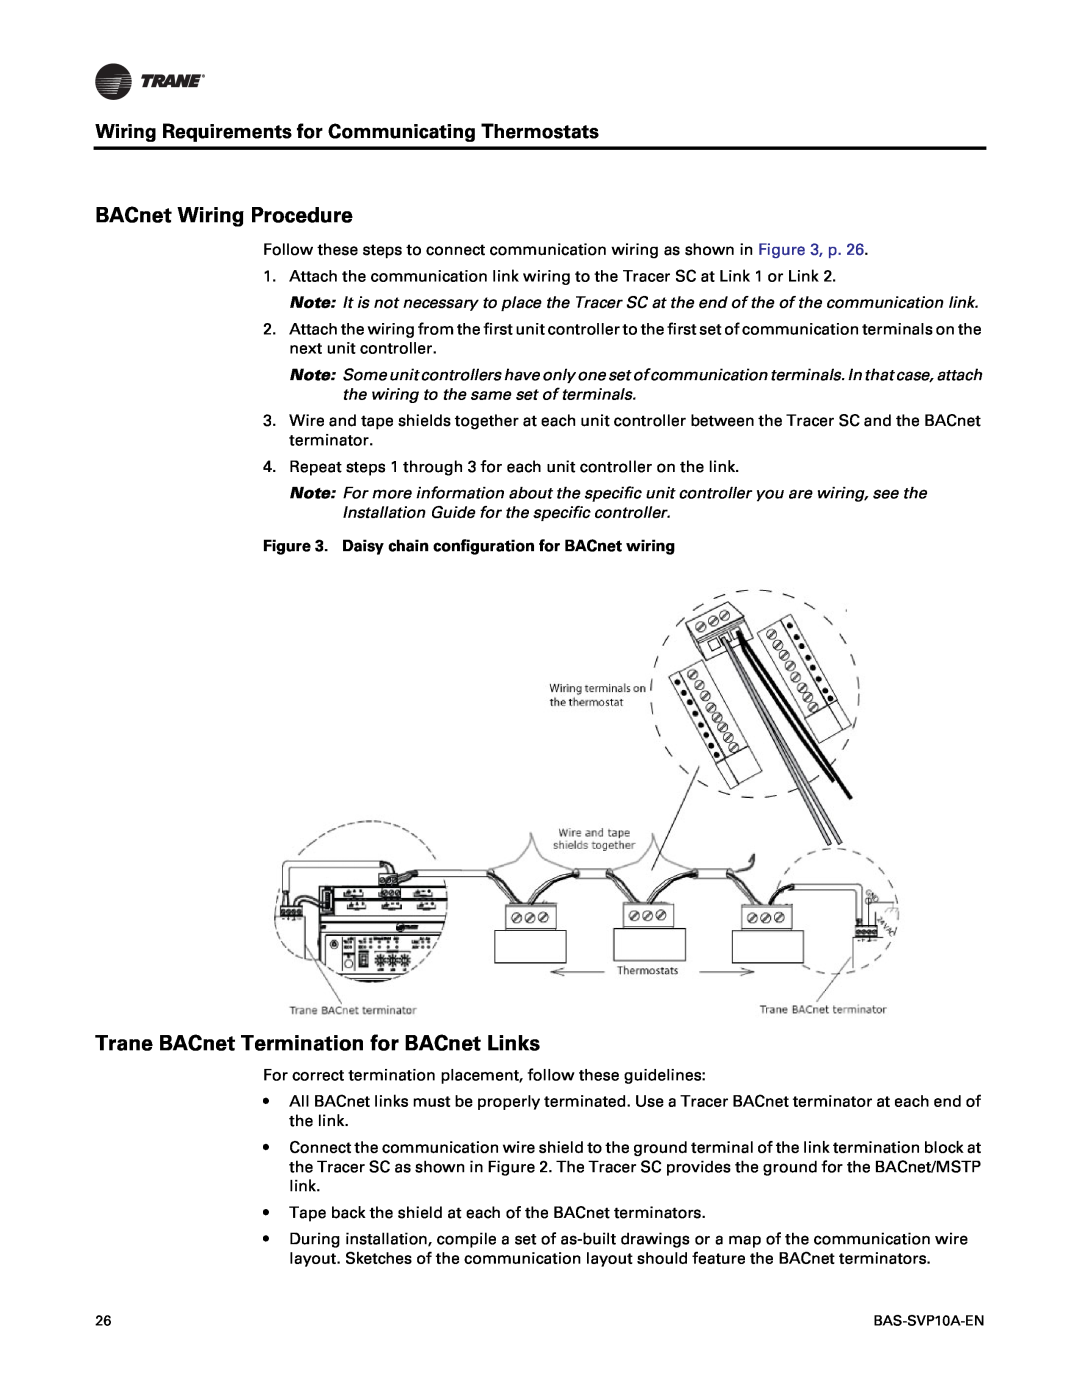 Trane BAS-SVP10A-EN manual BACnet Wiring Procedure, Trane BACnet Termination for BACnet Links 